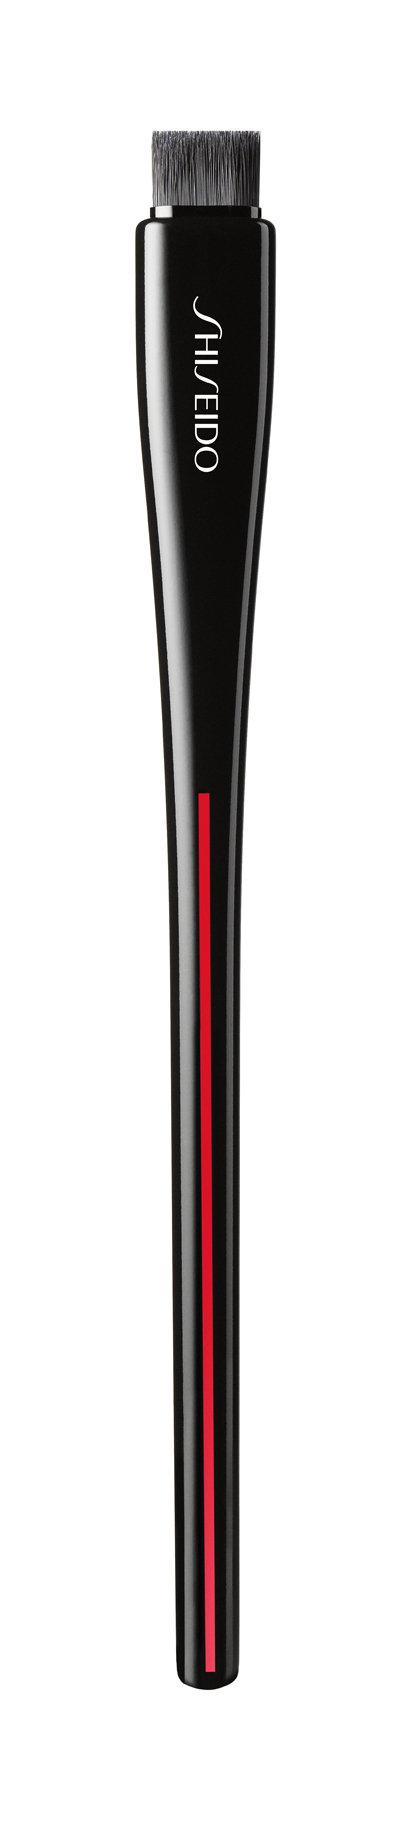 Кисть для подводки и бровей Shiseido Yane Hake Precision Eye Brush